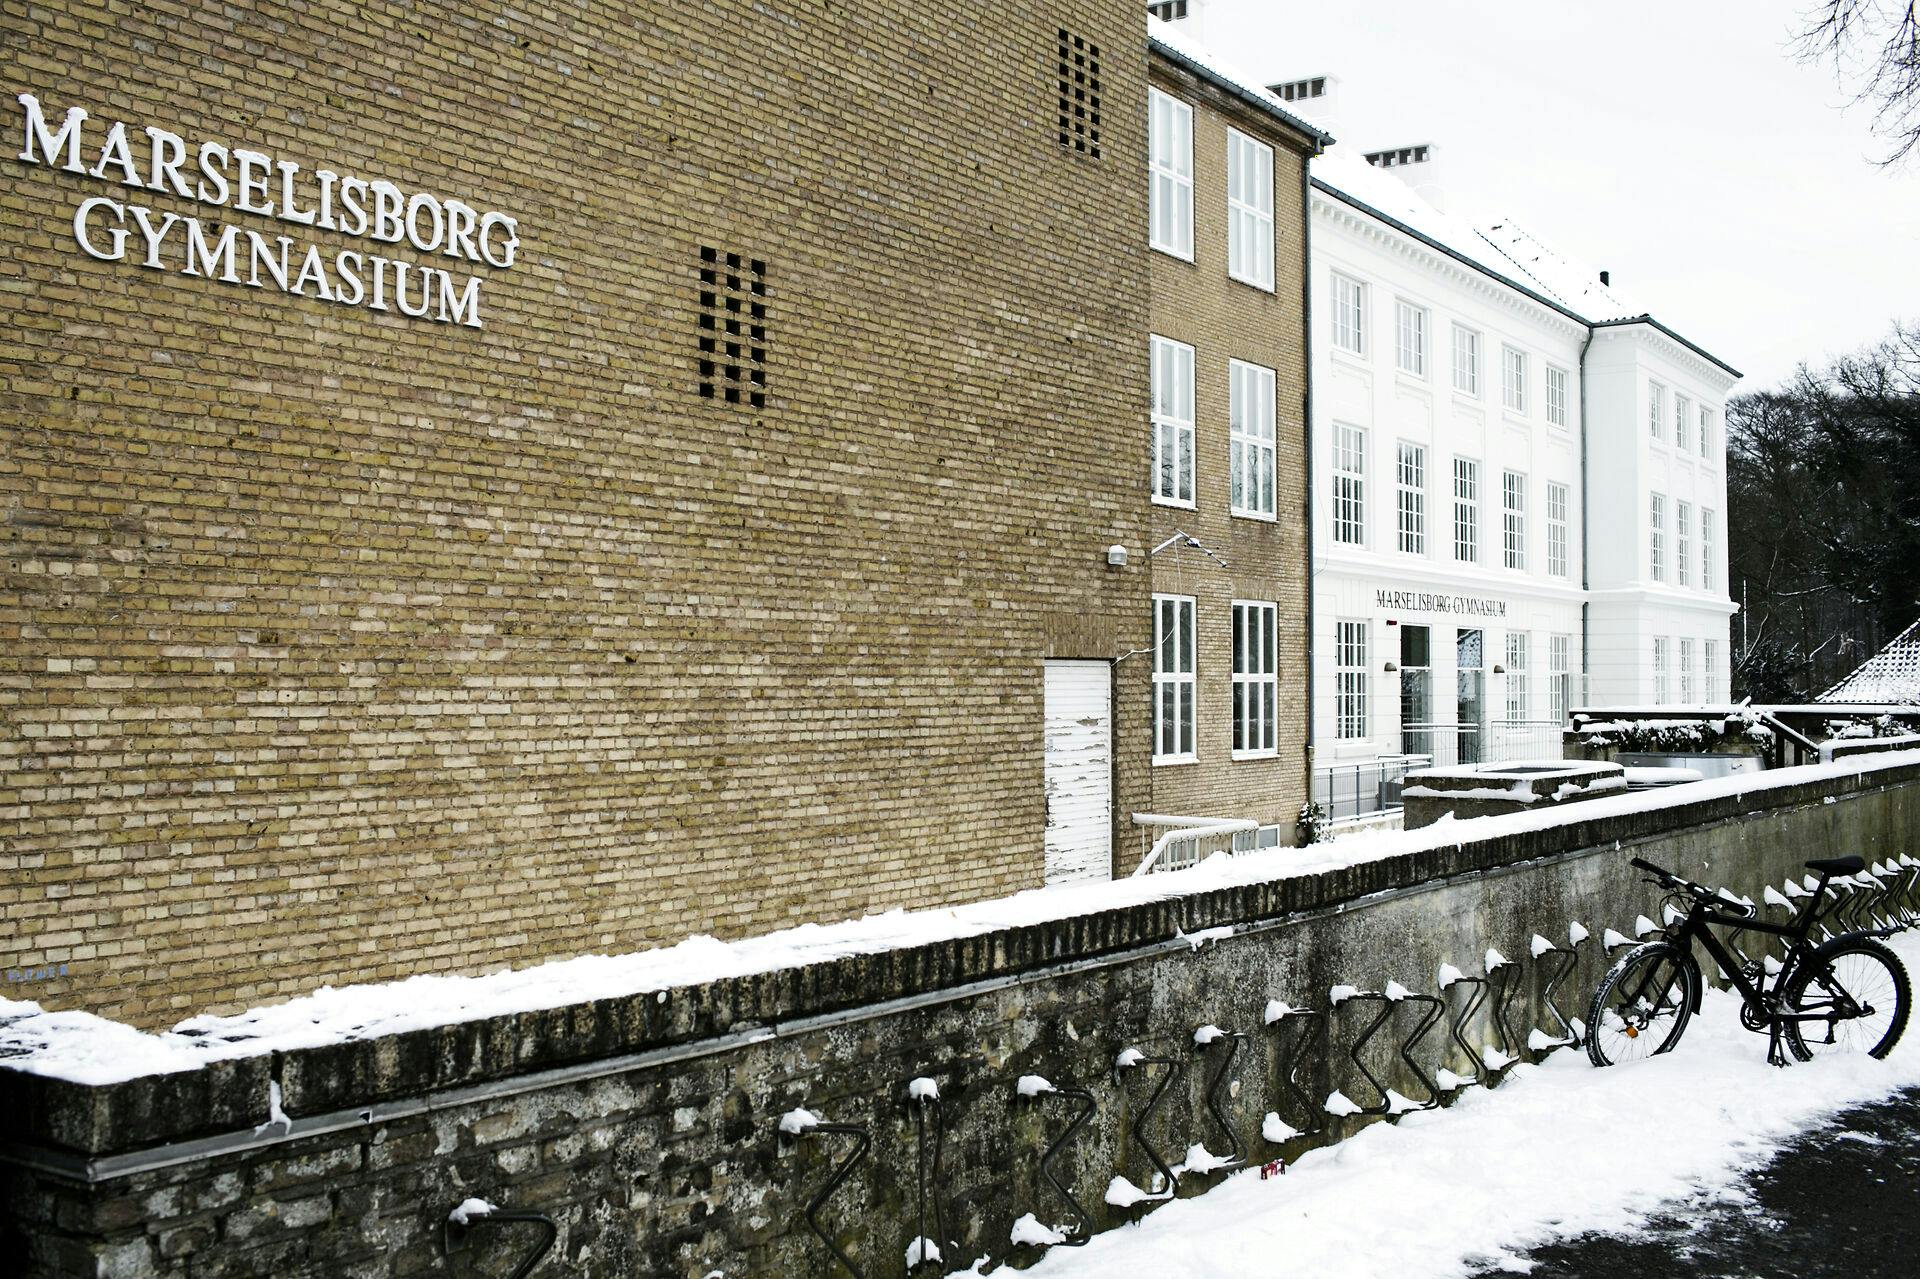 Alle elever blev mandag sendt hjem fra Marselisborg Gymnasium.